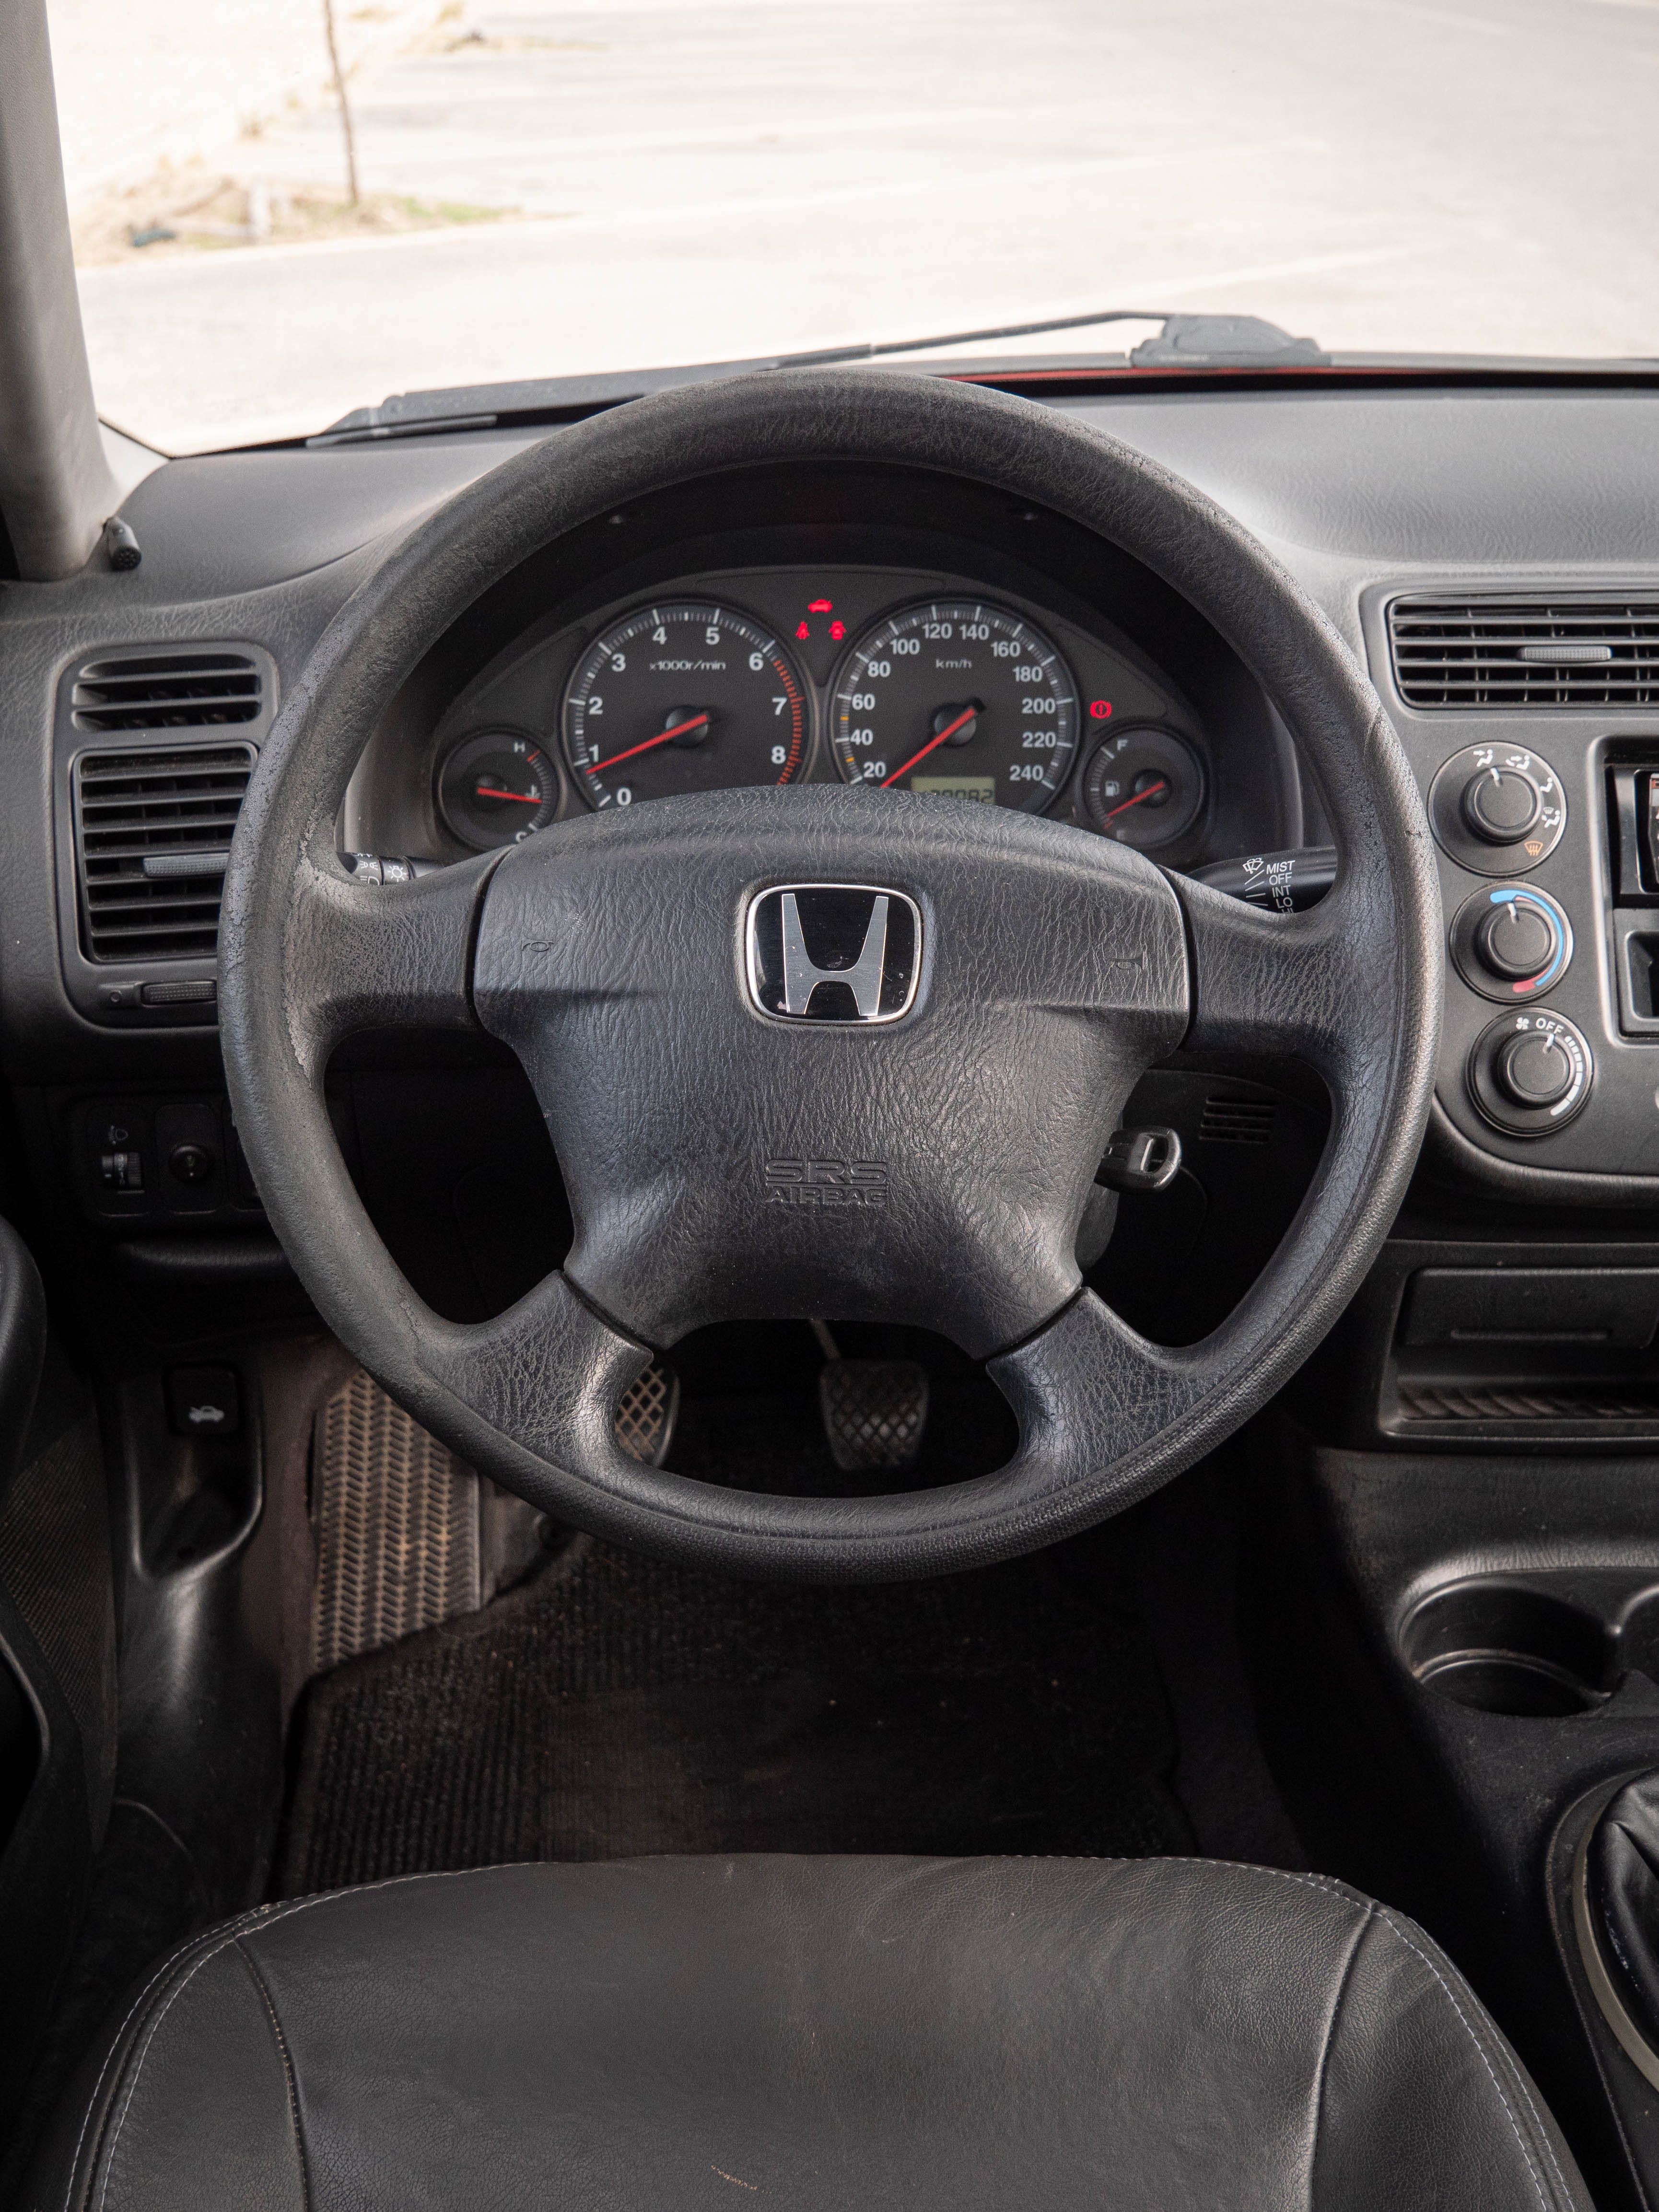 Honda Civic 1.4 ES 2001 90cv